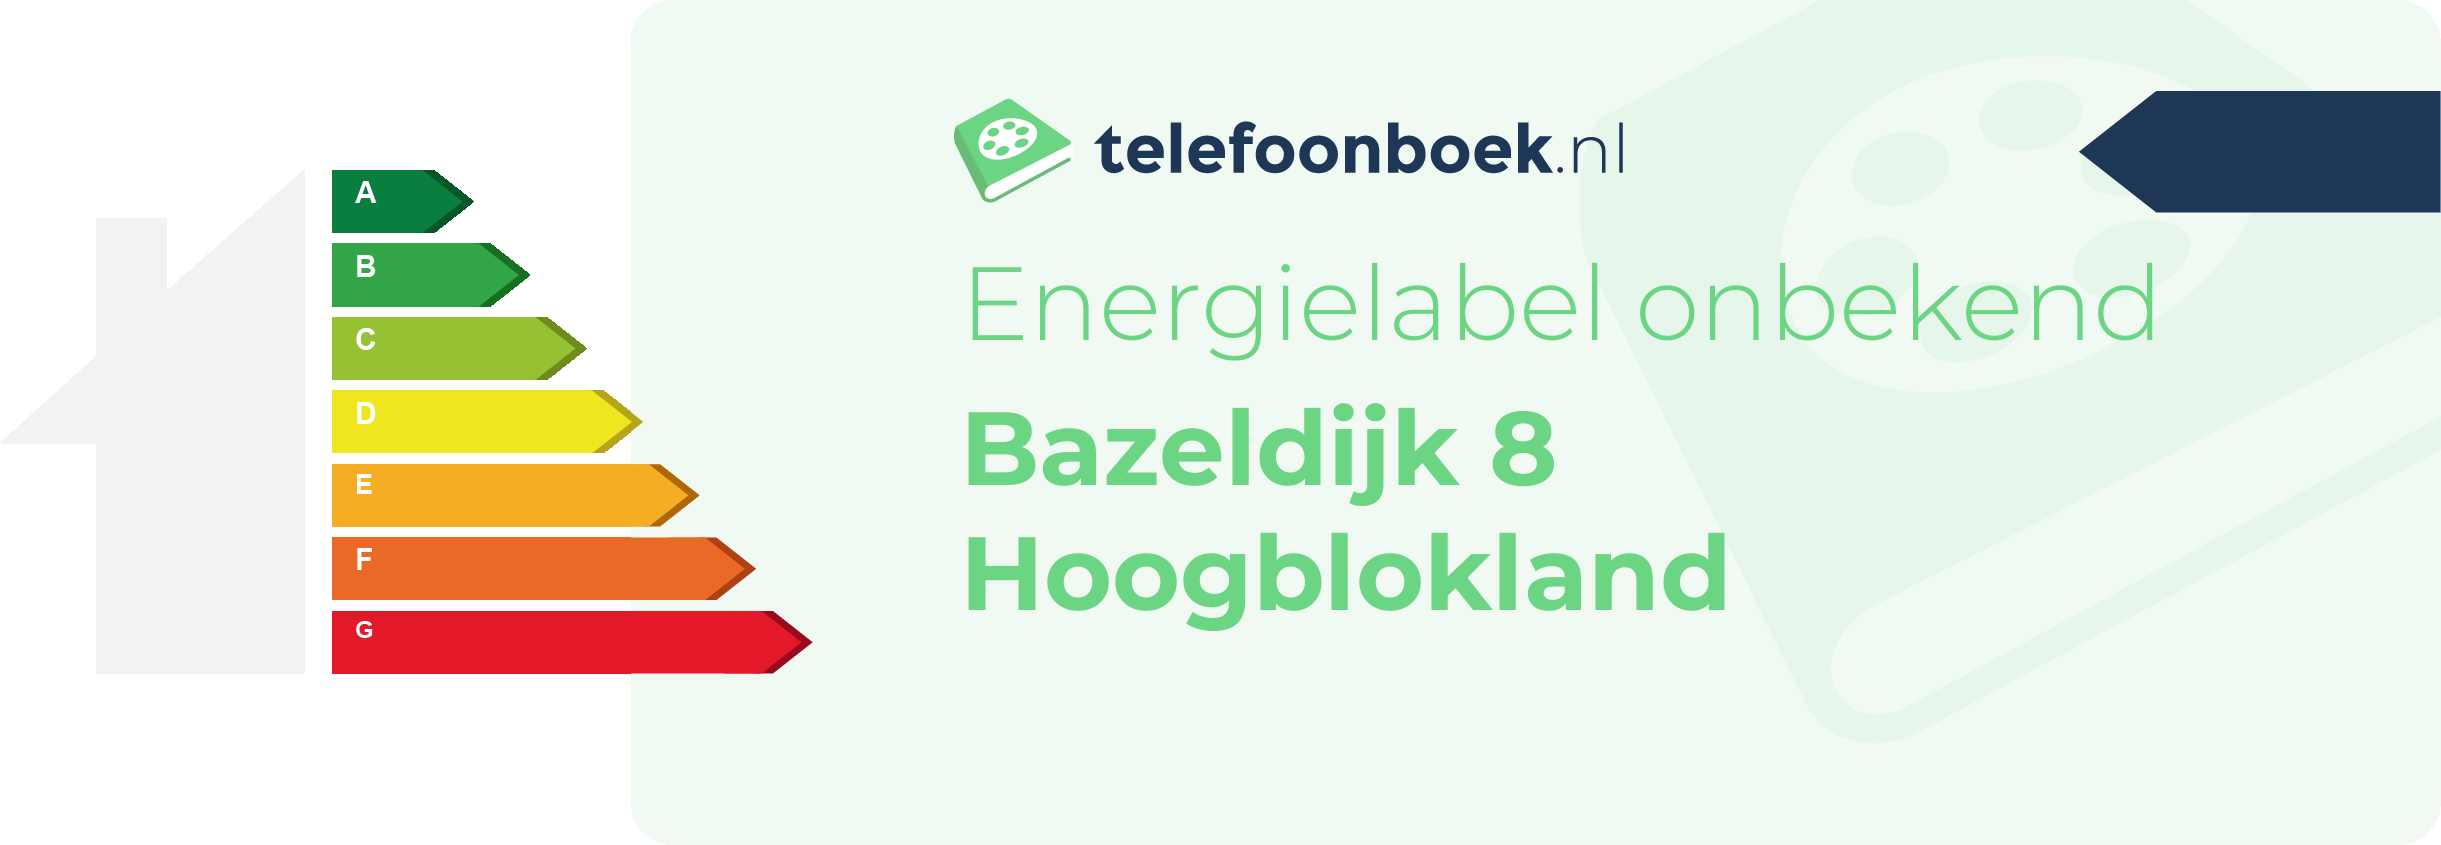 Energielabel Bazeldijk 8 Hoogblokland